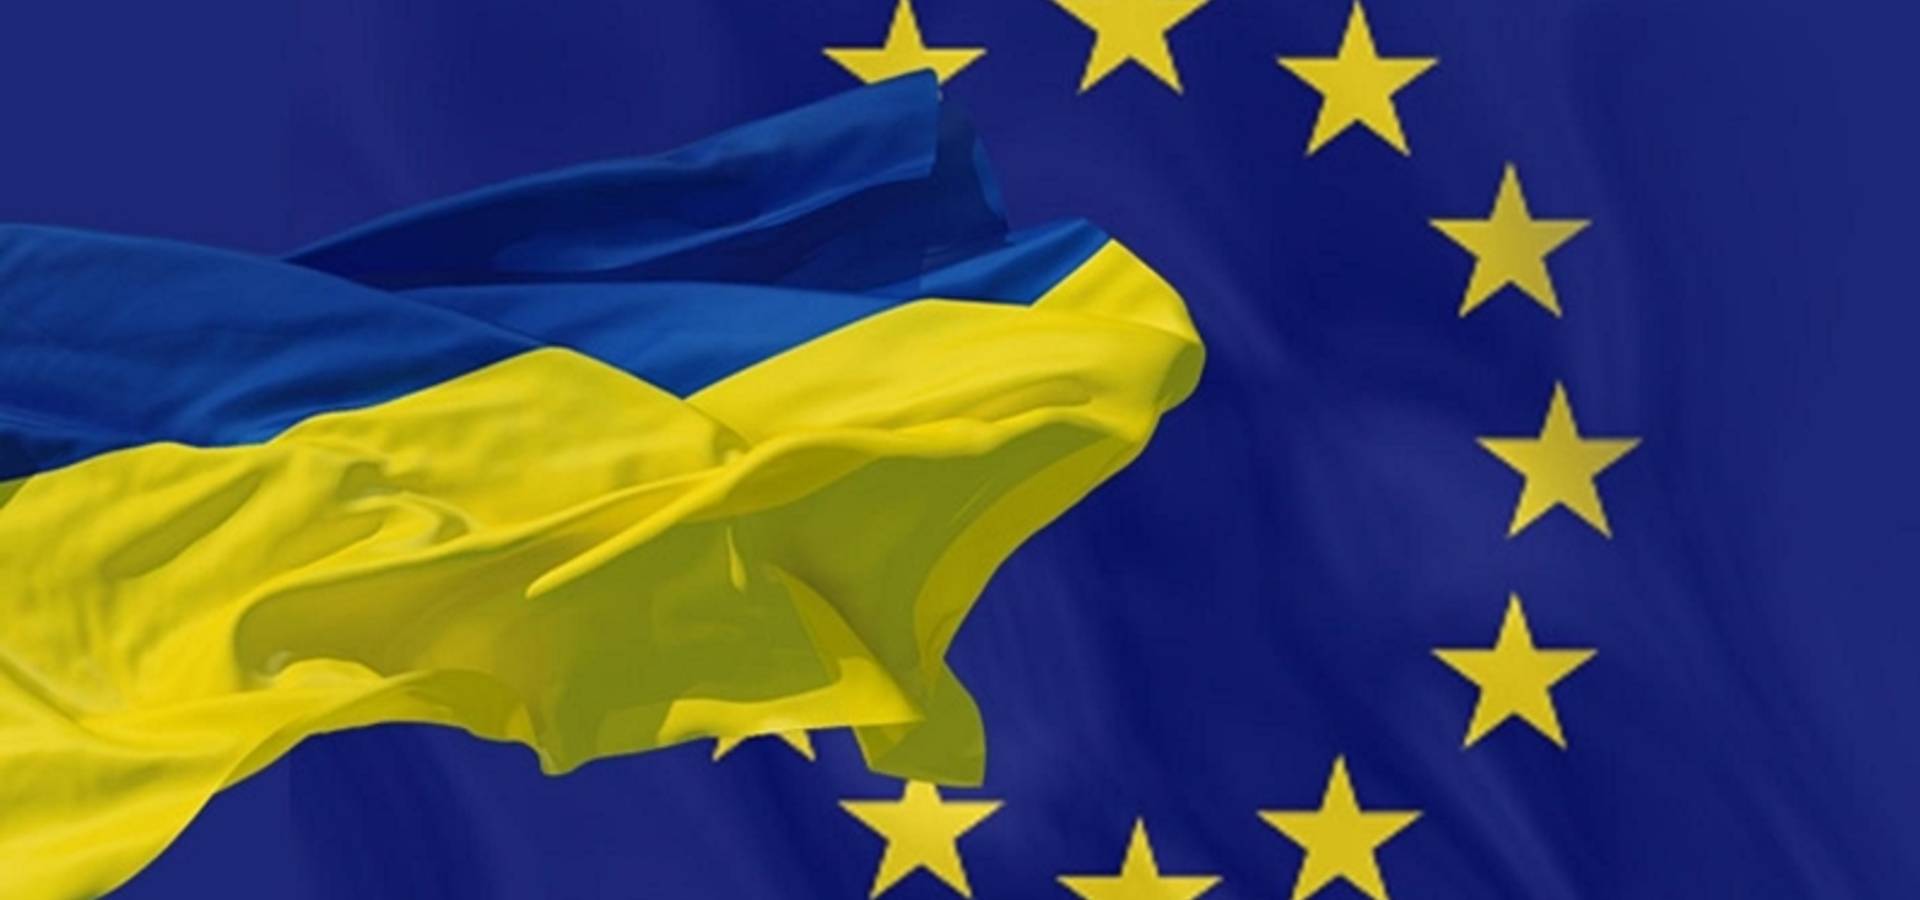 Україна повністю заповнила анкету щодо вступу в Євросоюз. Очікуємо на прискорену процедуру вступу в ЄС